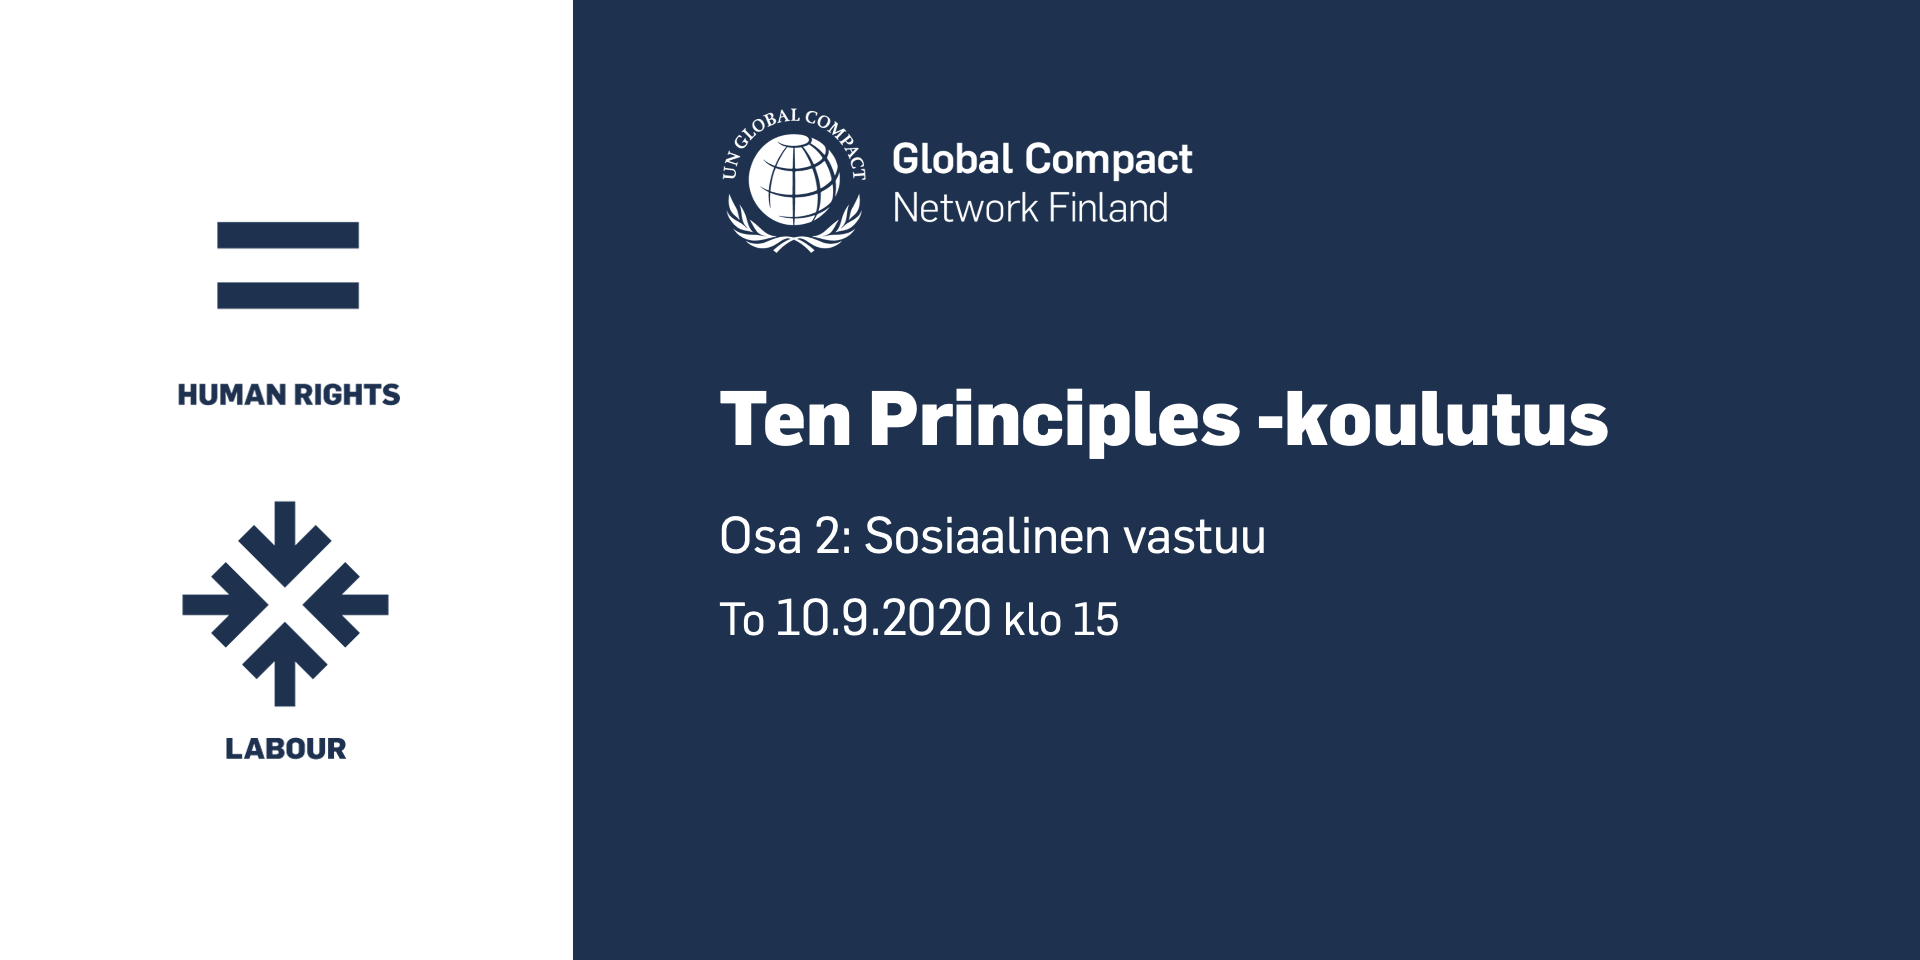 Ten Principles -koulutuksen toinen osa järjestetään virtuaalisesti torstaina 10.9. klo 15.